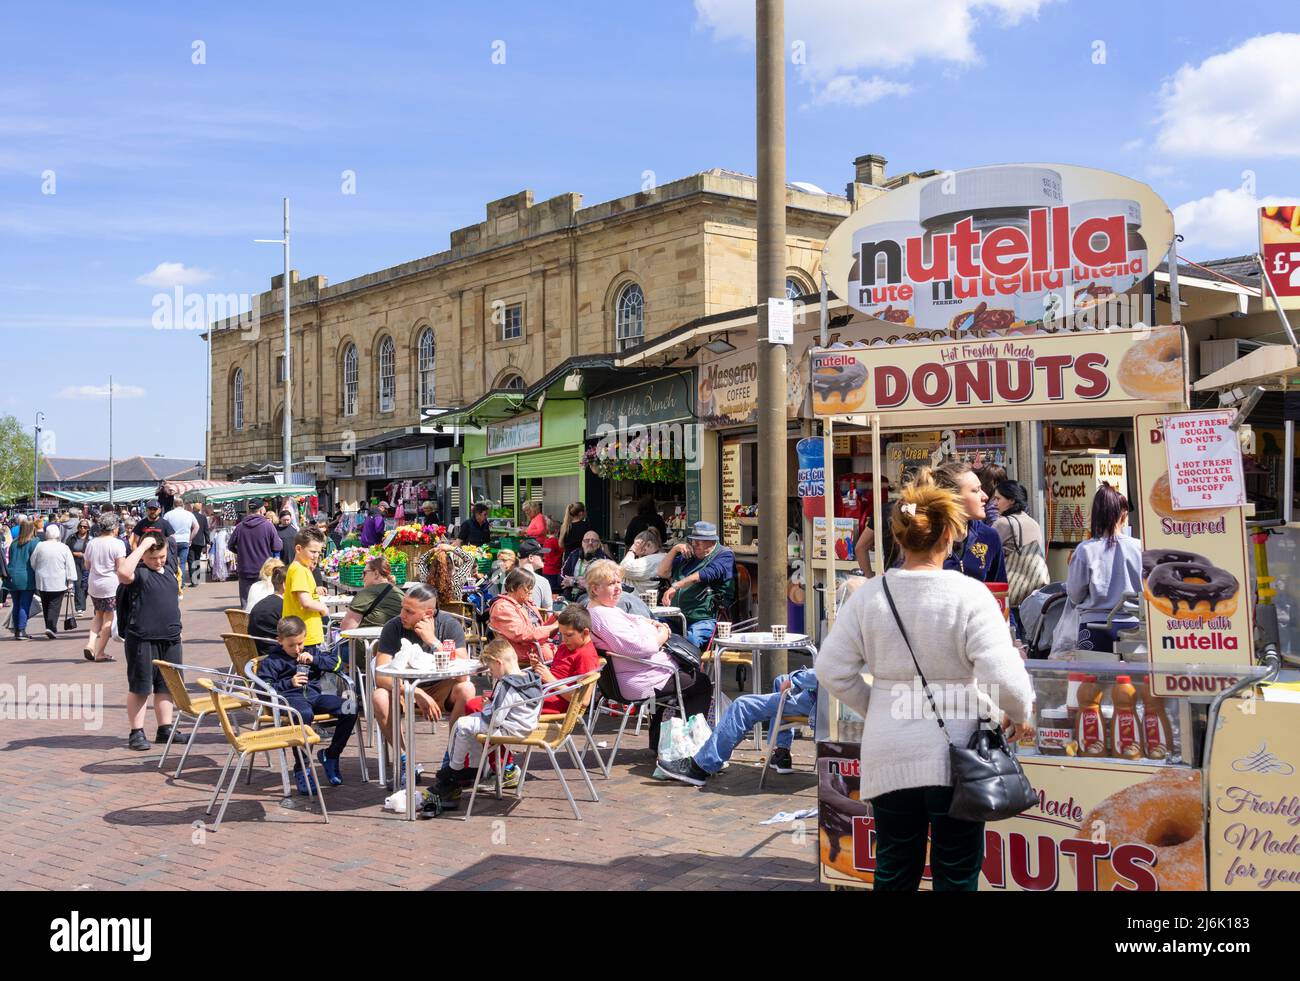 Verkaufsstand für frische Donuts auf dem Doncaster-Marktplatz Doncaster South Yorkshire England GB Europa Stockfoto